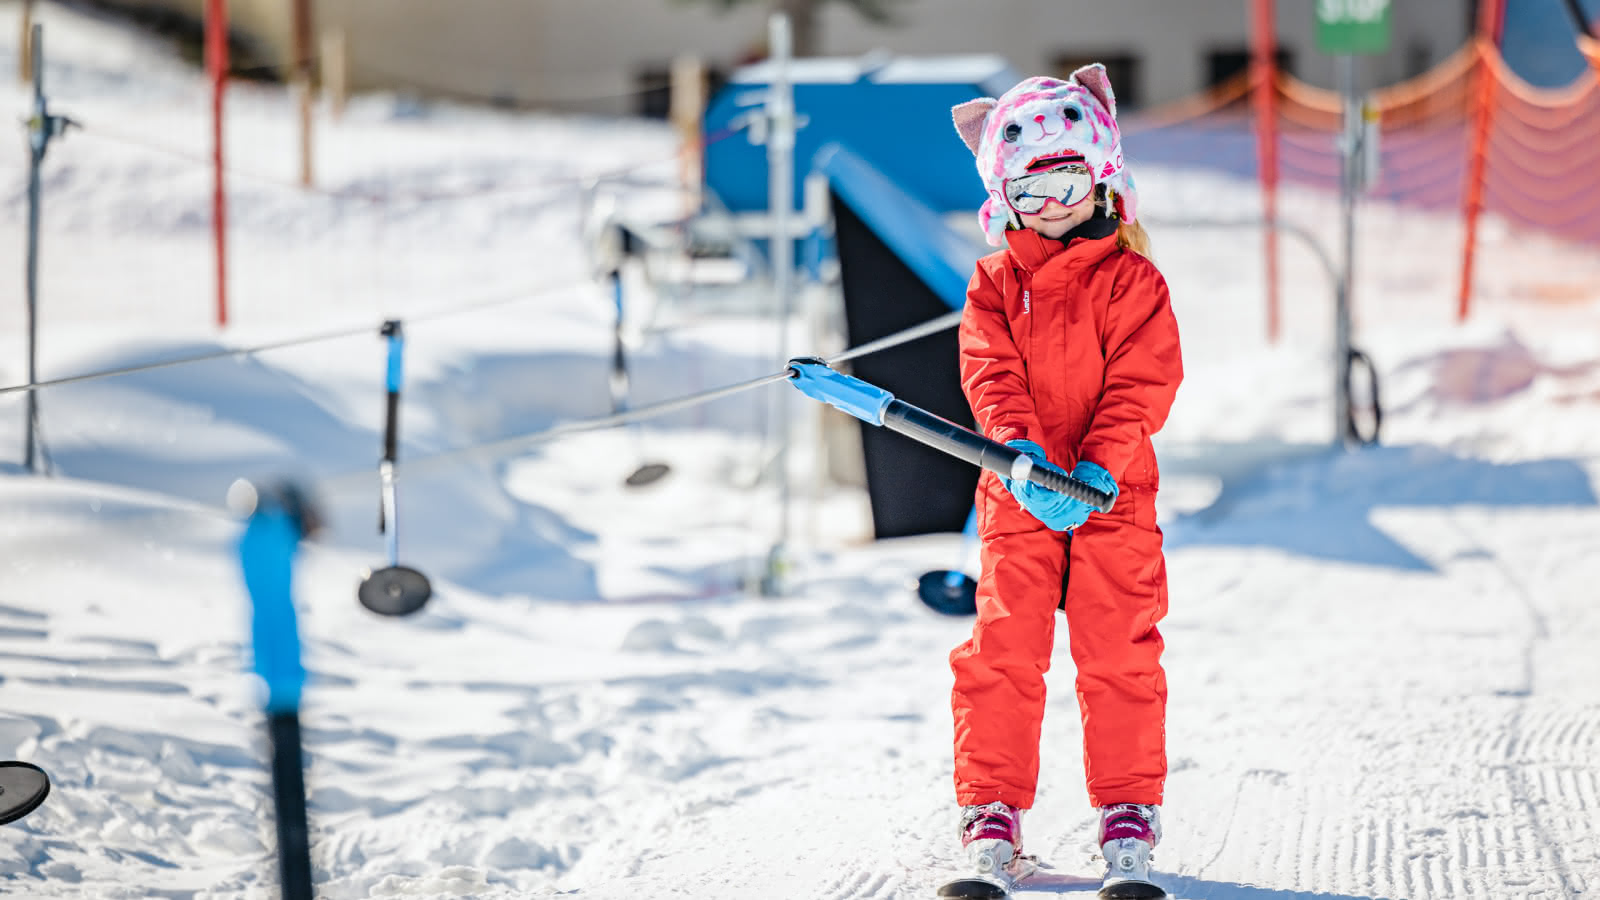 Remontée mécanique adaptée à l'apprentissage du ski